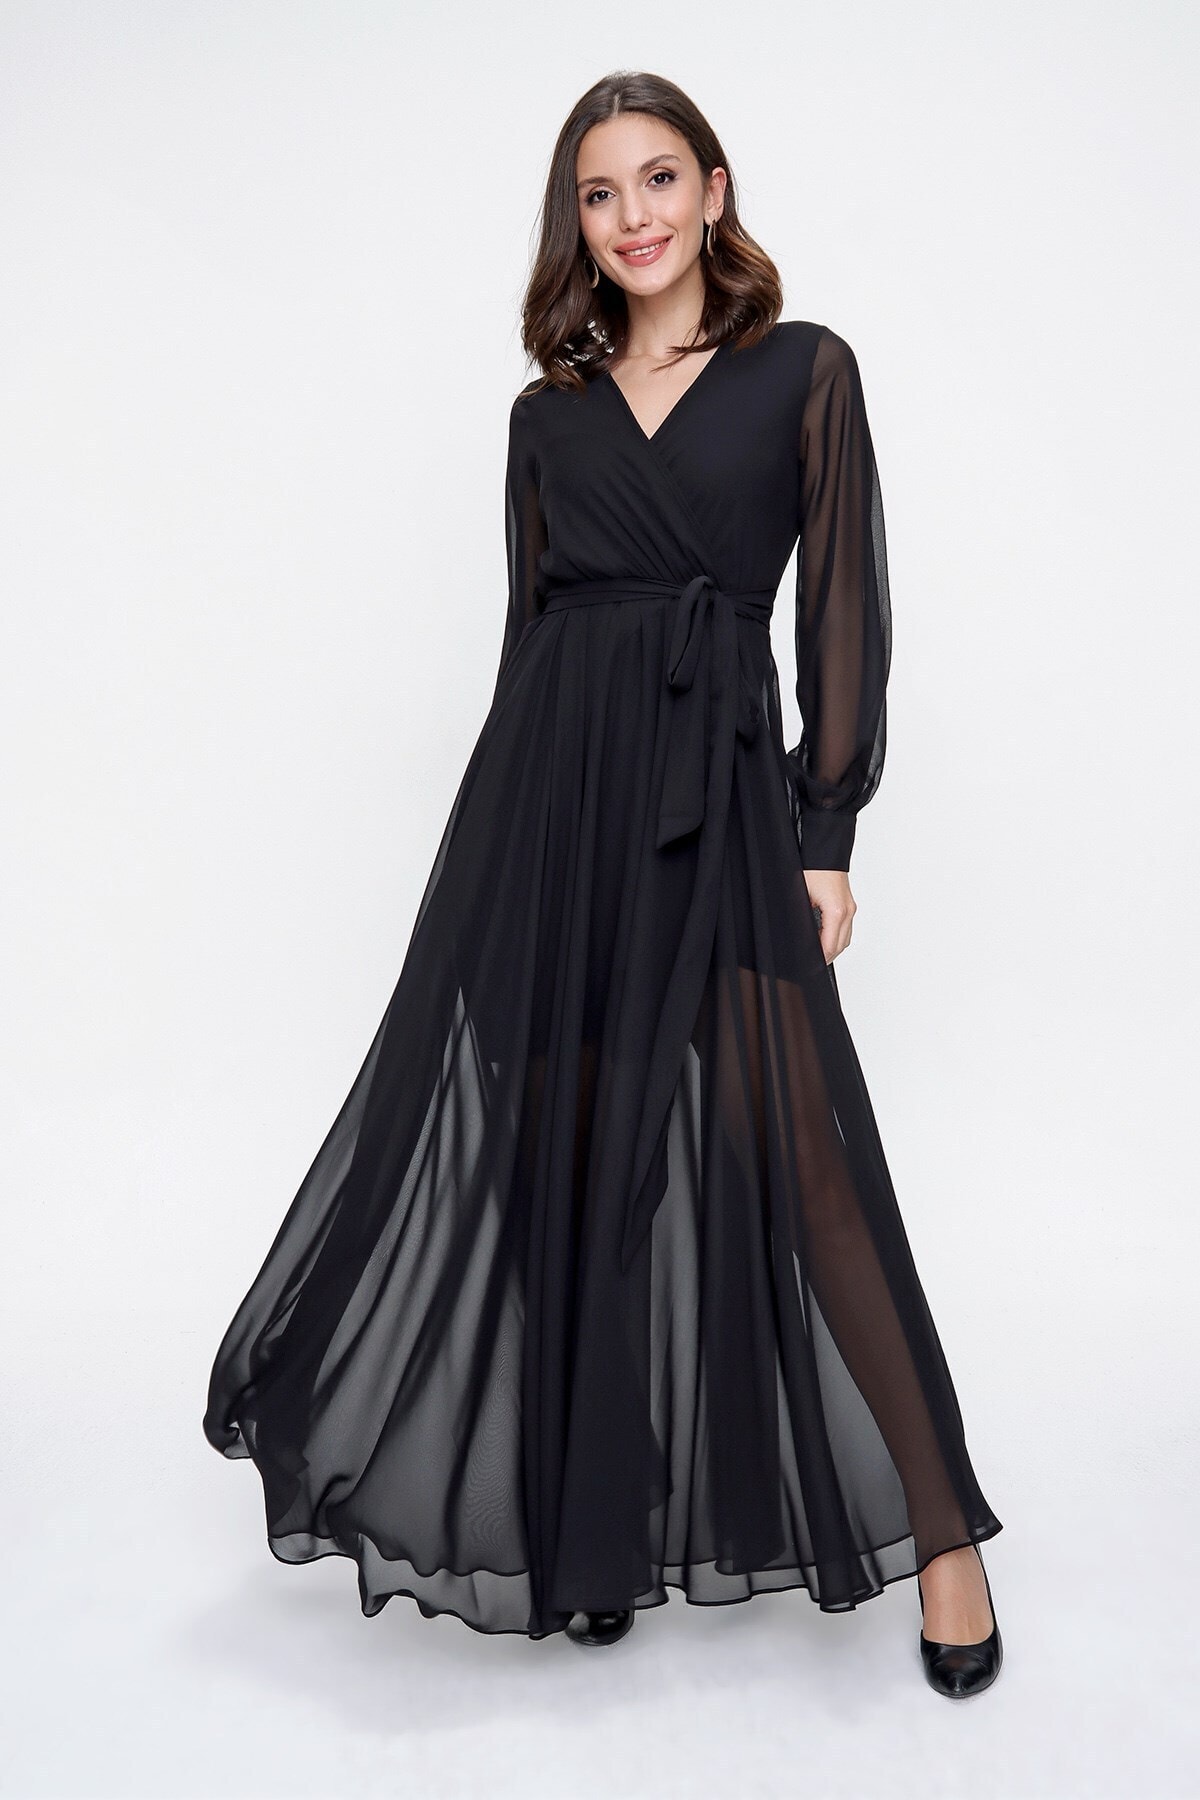 Levně By Saygı Double Breasted Neck Long Sleeve Lined Chiffon Long Dress Black